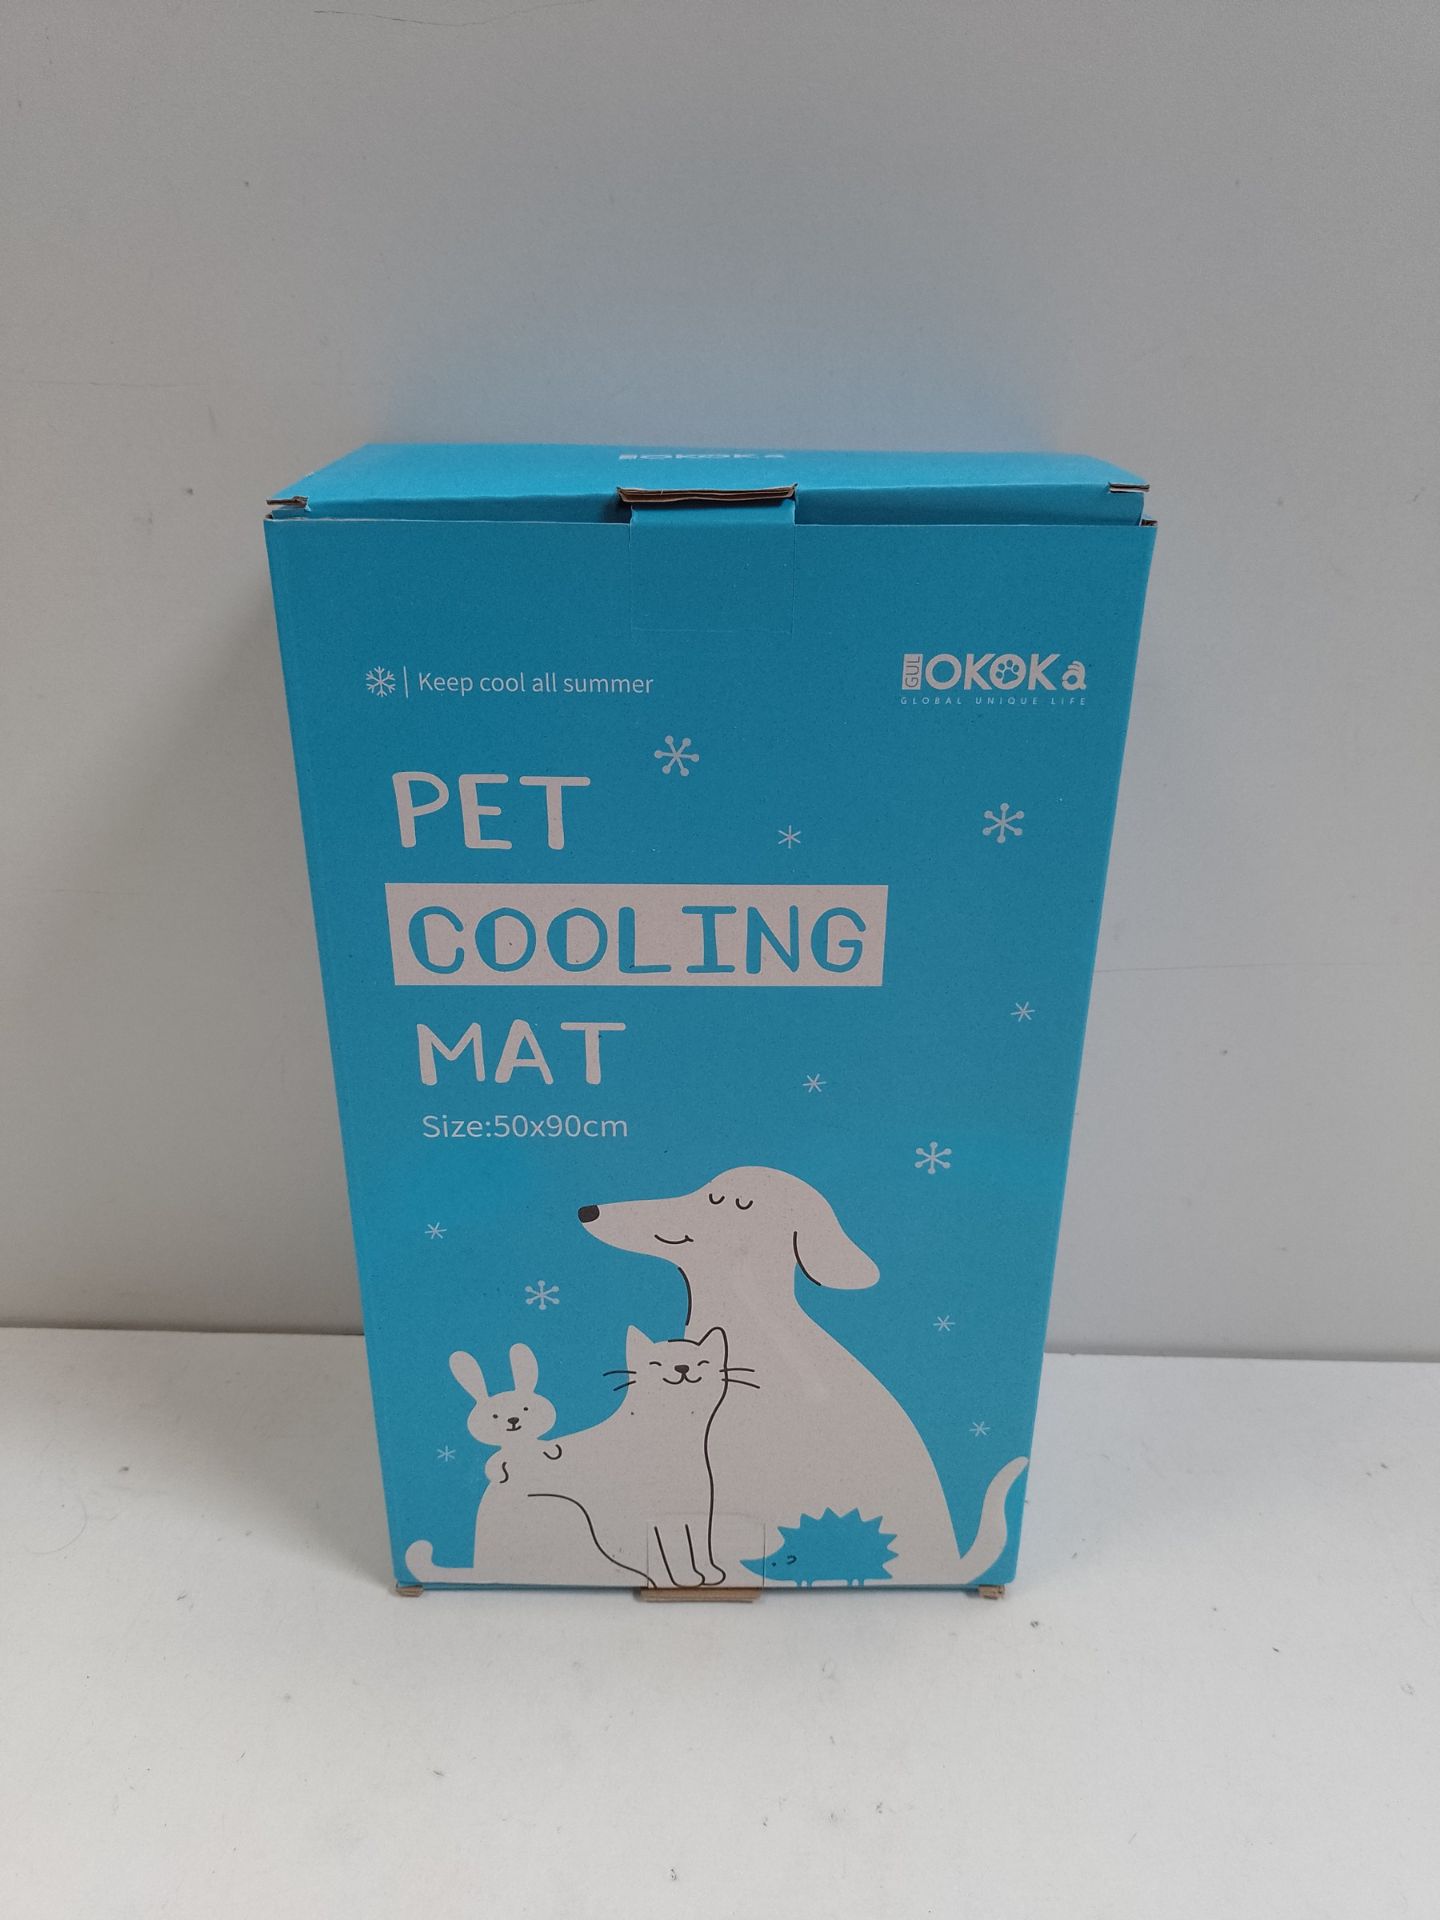 RRP £21.43 Gulokoka Dog Cooling Mats - Image 2 of 2